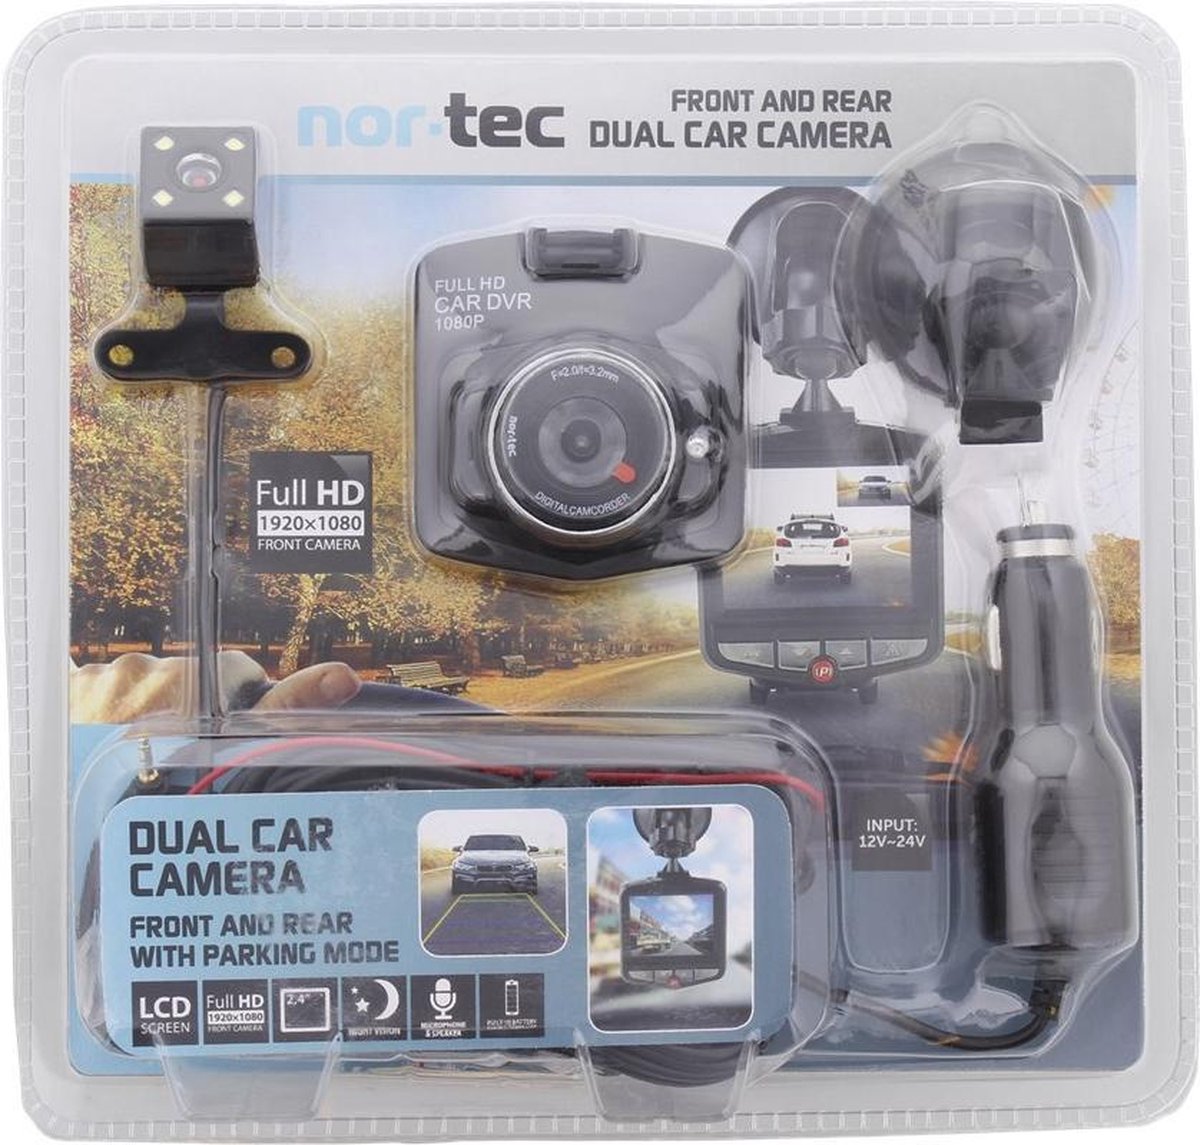 Ontspannend slijtage hoeveelheid verkoop Nor-Tec dual dashcam voor auto - voor en achter - achteruitrijcamera |  bol.com